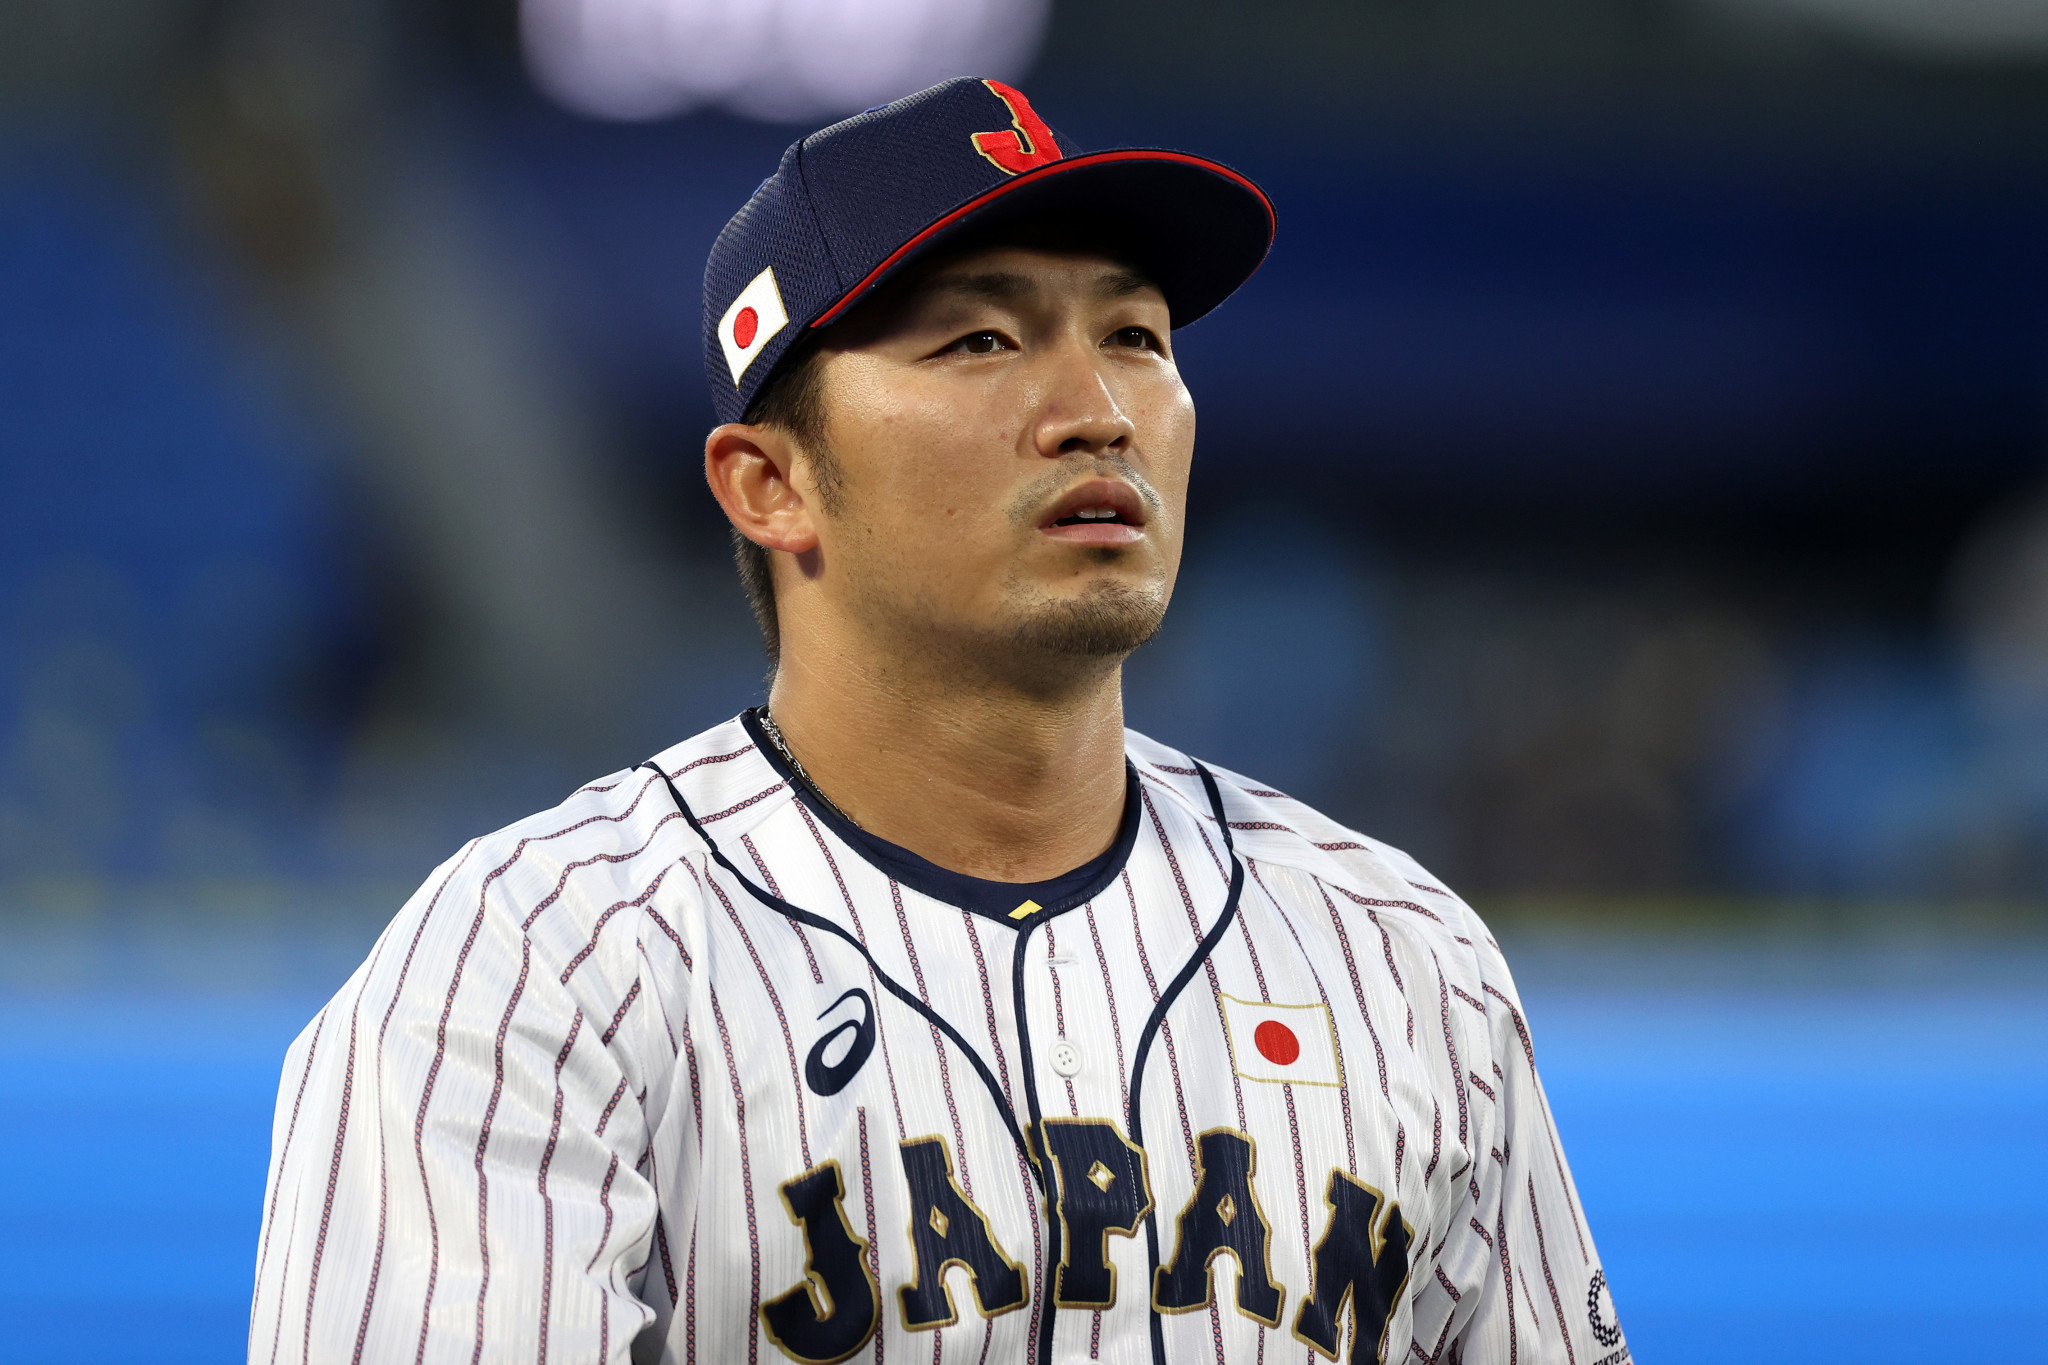 Zlatá medailistka z Tokia 2020 Suzuki se utká s Japonskem na World Baseball Classic